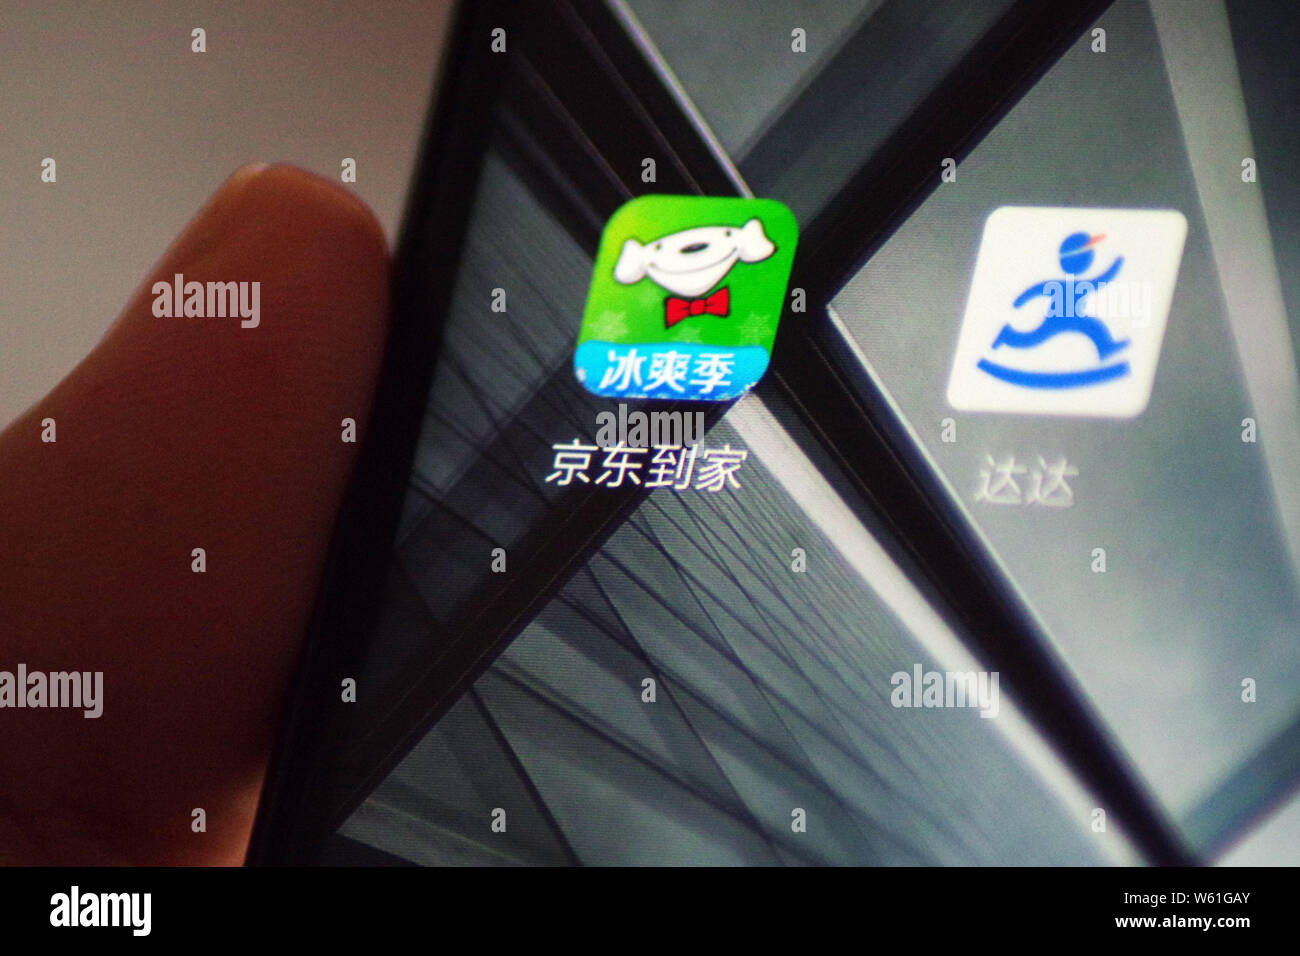 --FILE--un cinese telefono cellulare utente guarda le icone di Dada Express, destra e negozio di generi alimentari piattaforma di e-commerce JD Daojia (JDDJ) sul suo smartphone in Ji'na Foto Stock